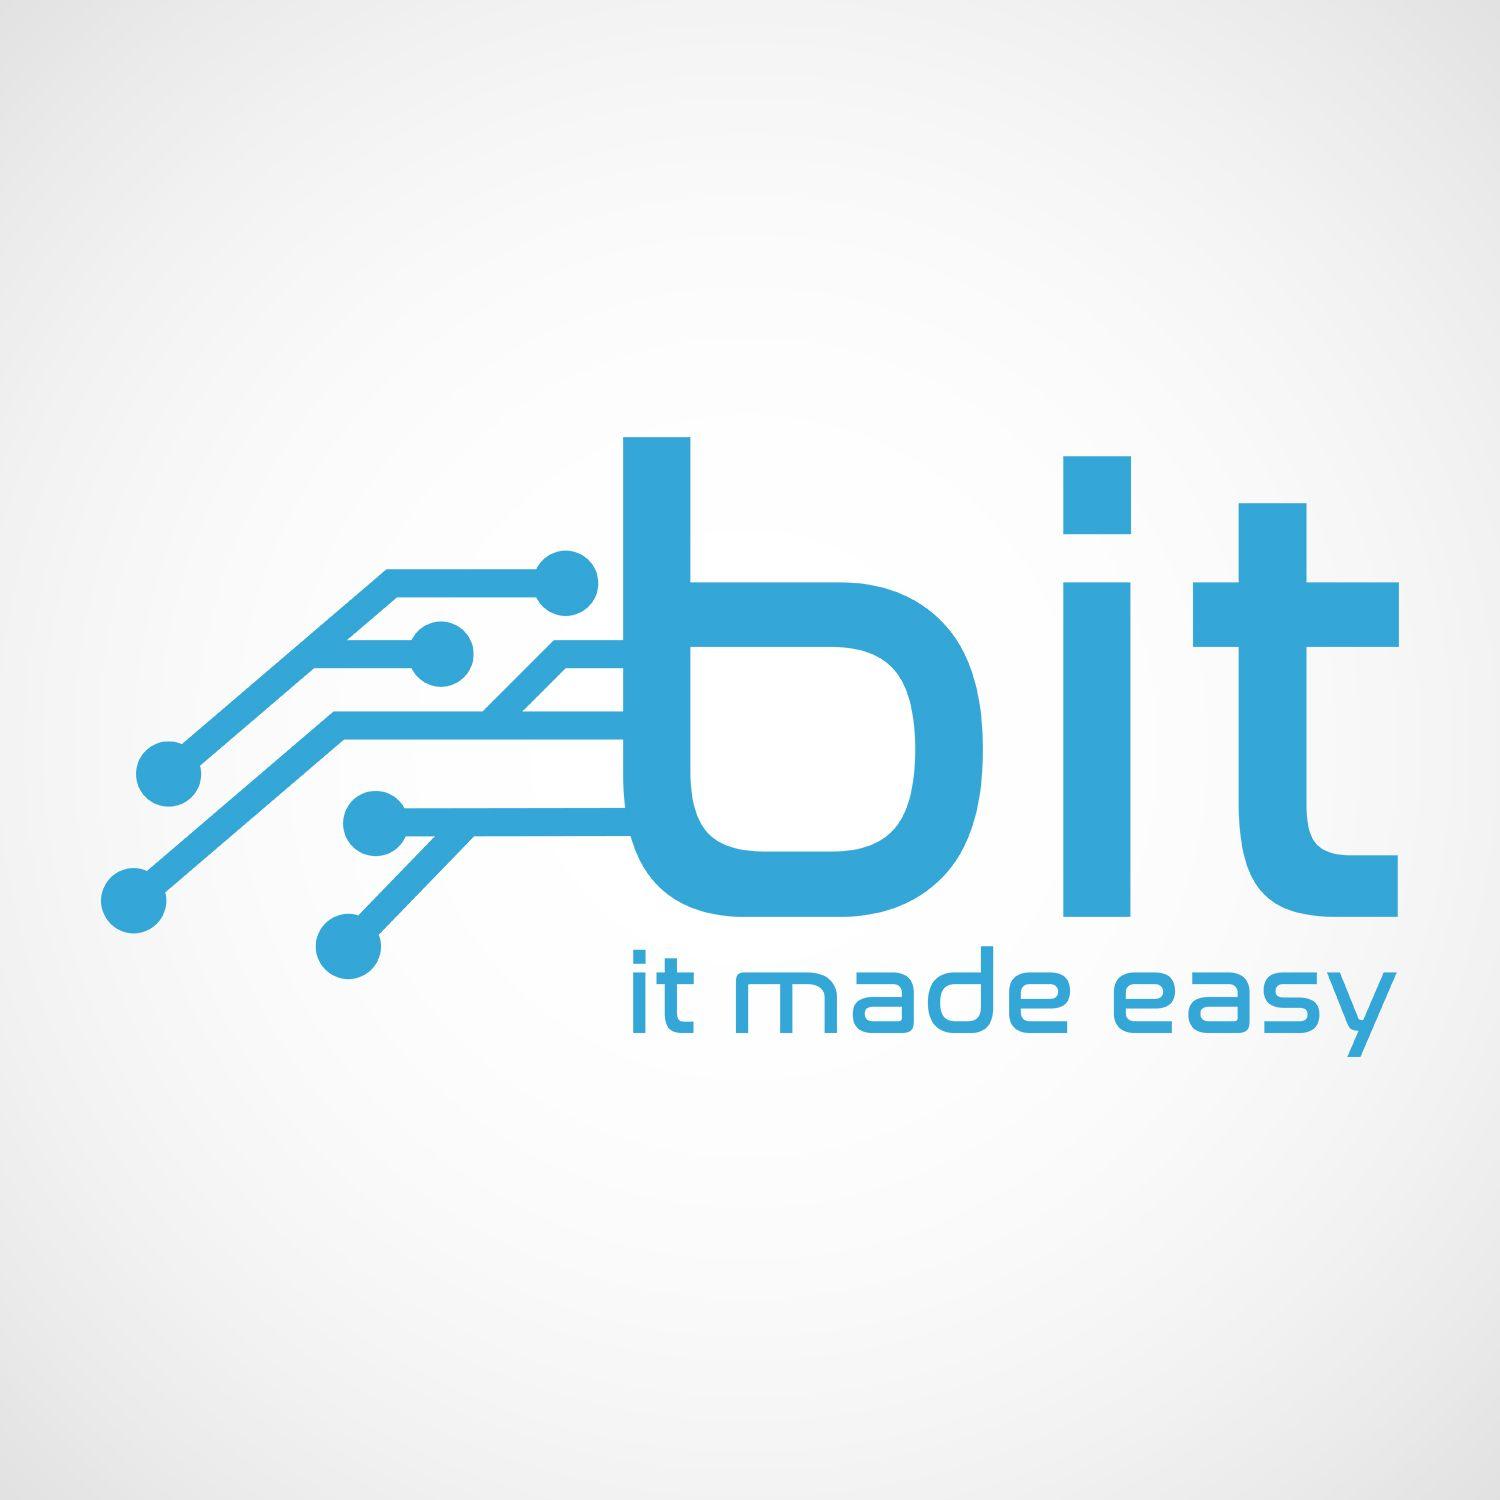 Bit Logo - Playful, Modern, Computer Repair Logo Design for BIT does not need